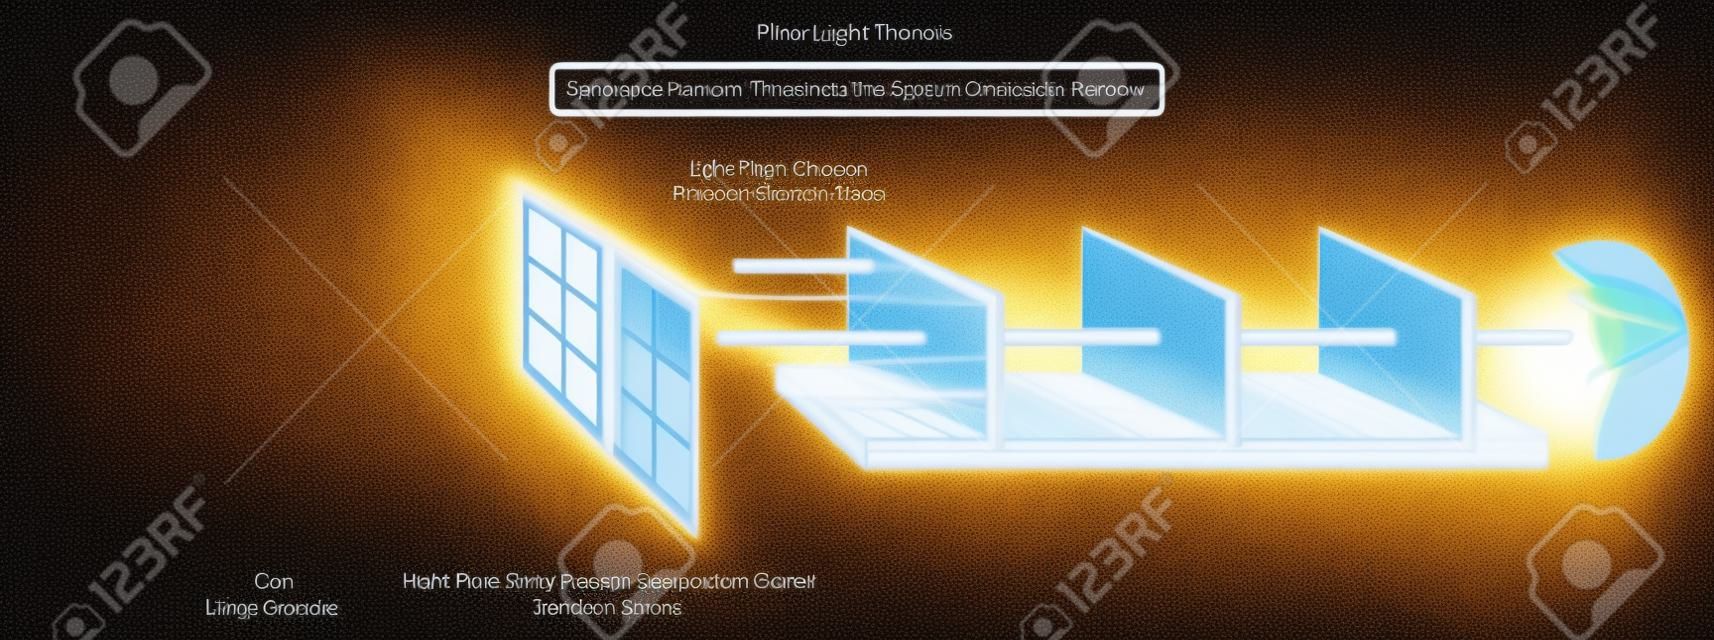 물리학 과학 교육을 위해 광원 태양과 광선이 투명한 물체 창 유리를 직선으로 통과하는 것을 보여주는 Light Travels 인포그래픽 다이어그램